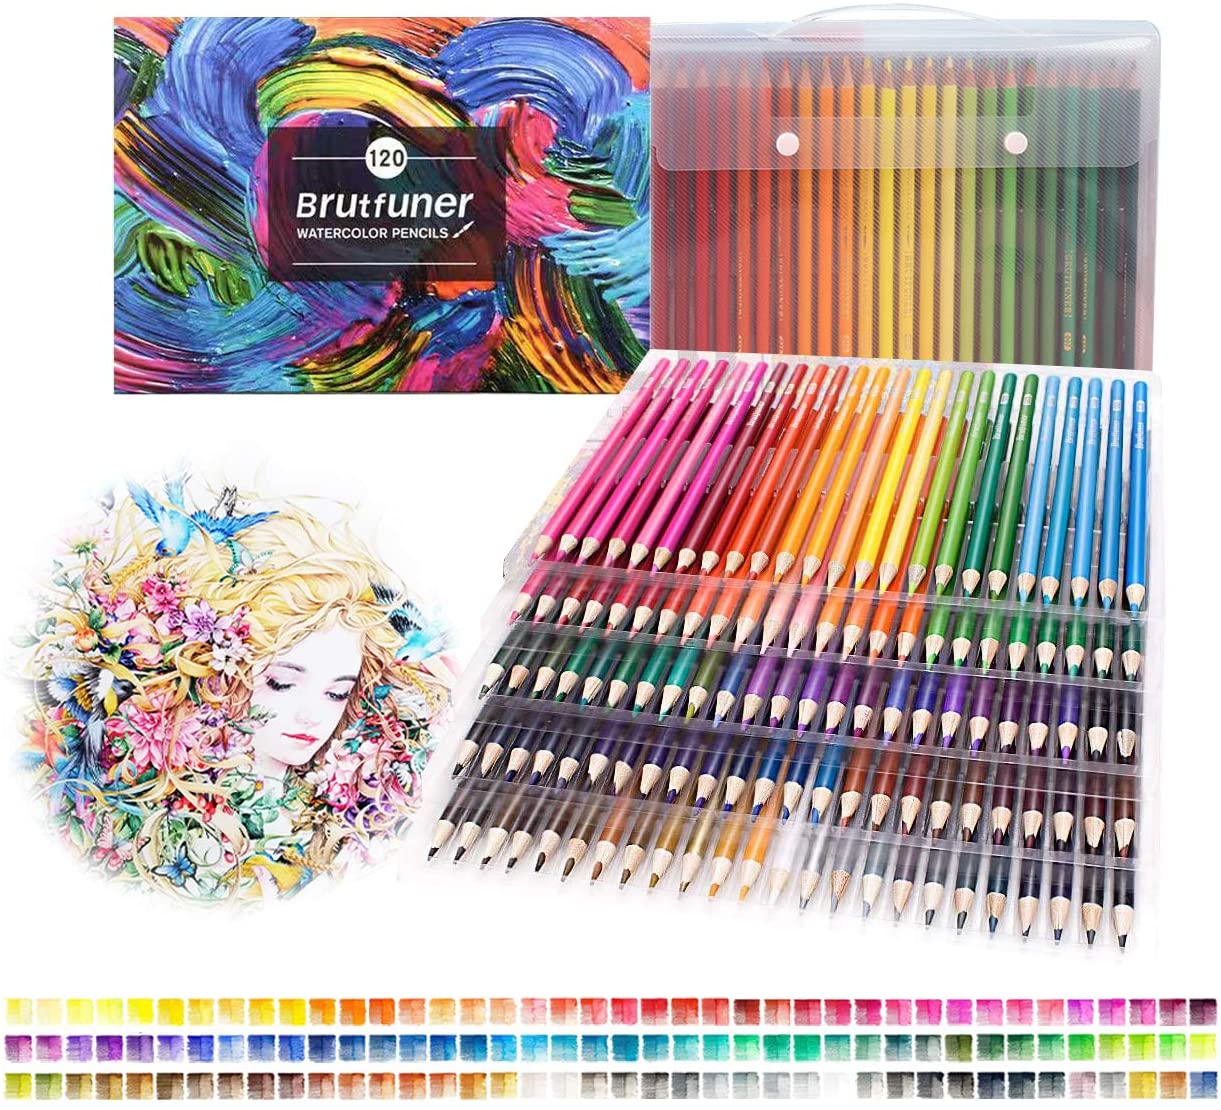 BRUTFUNER 120 Professional Watercolor Artist Pencils Set - TTpen